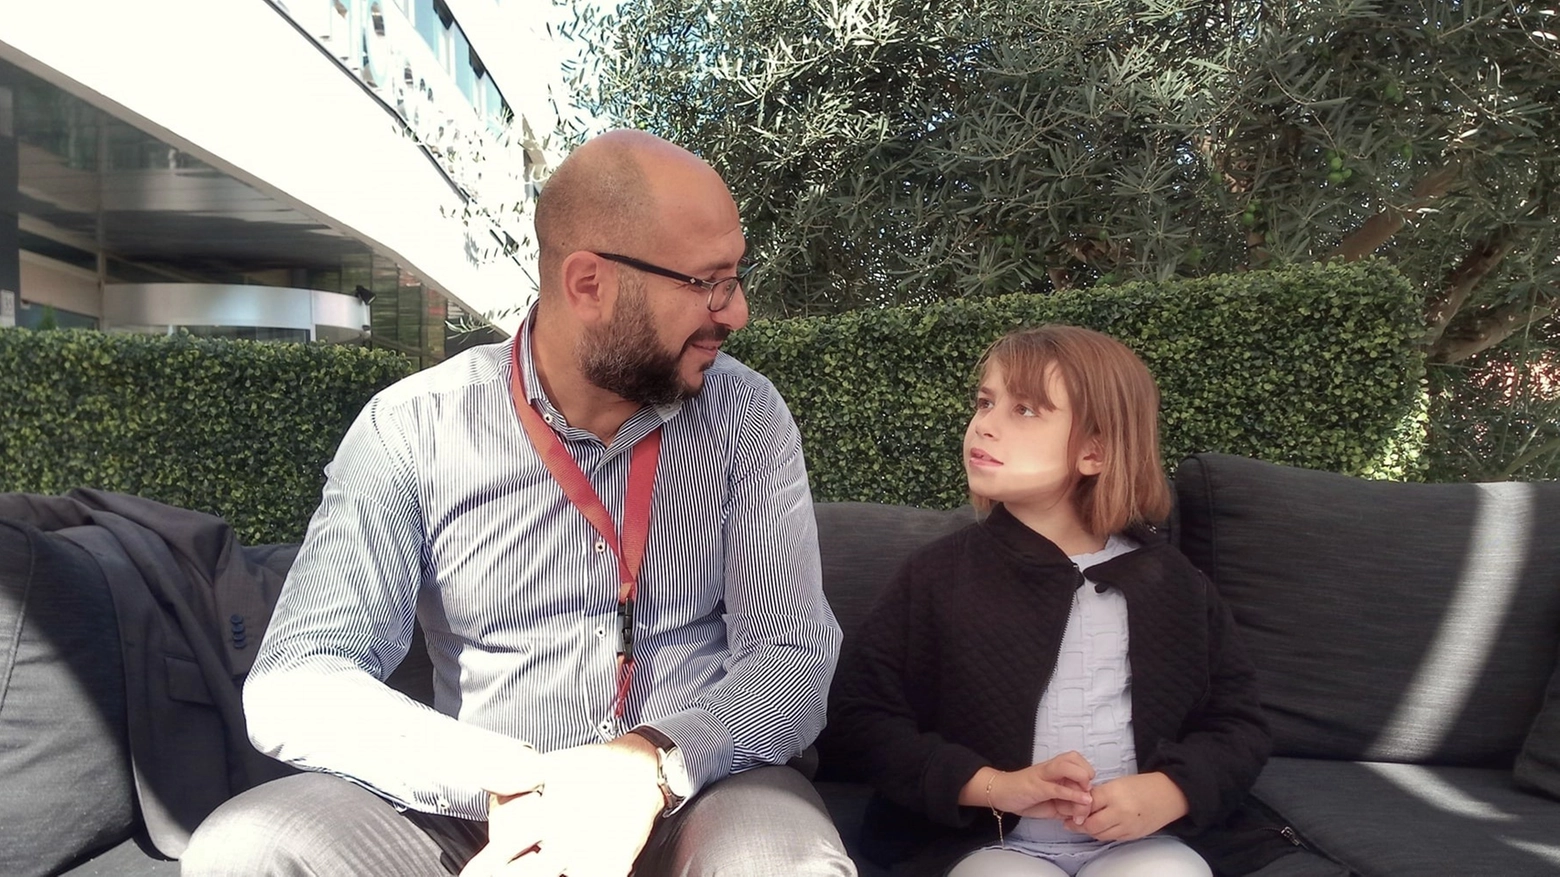 Salvatore Franzè e sua figlia Giorgia al meeting "Rett Syndrome Research, Towards the Future" a Roma, 2018